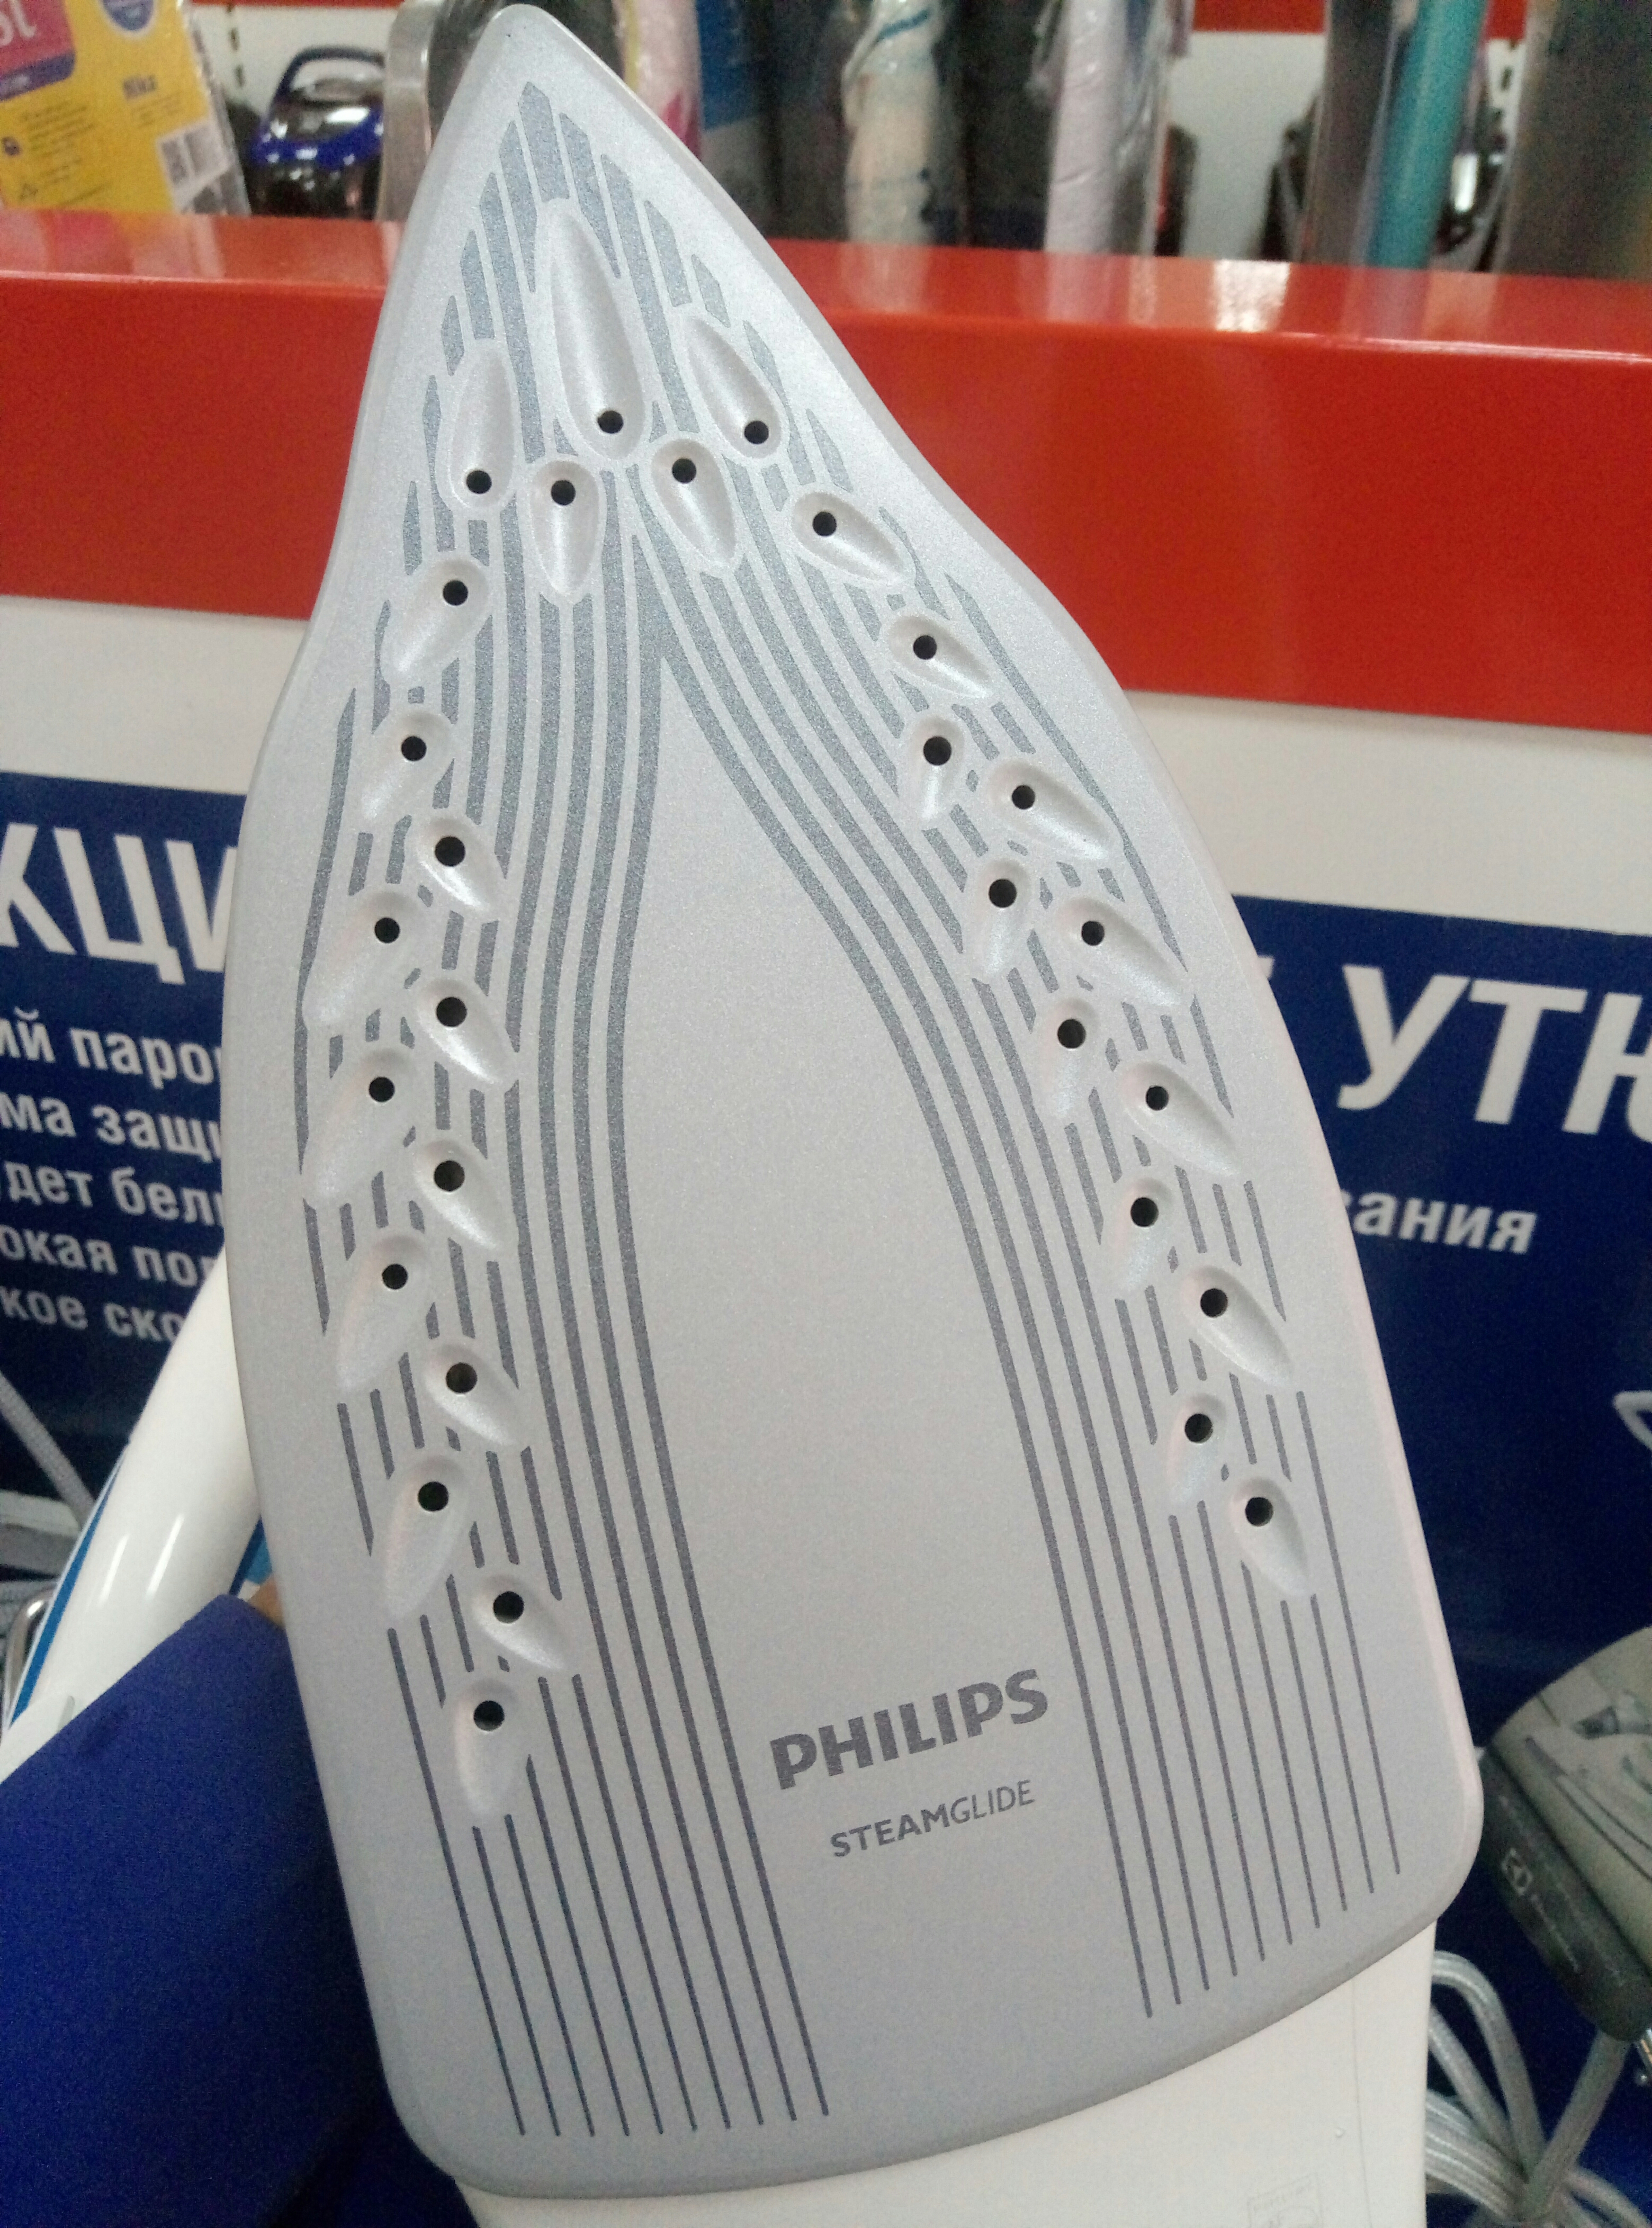 Филипс подошва. Утюг Philips с подошвой STEAMGLIDE Plus. Утюг Philips STEAMGLIDE Ceramic. Подошва STEAMGLIDE Plus. STEAMGLIDE Plus подошва утюга.